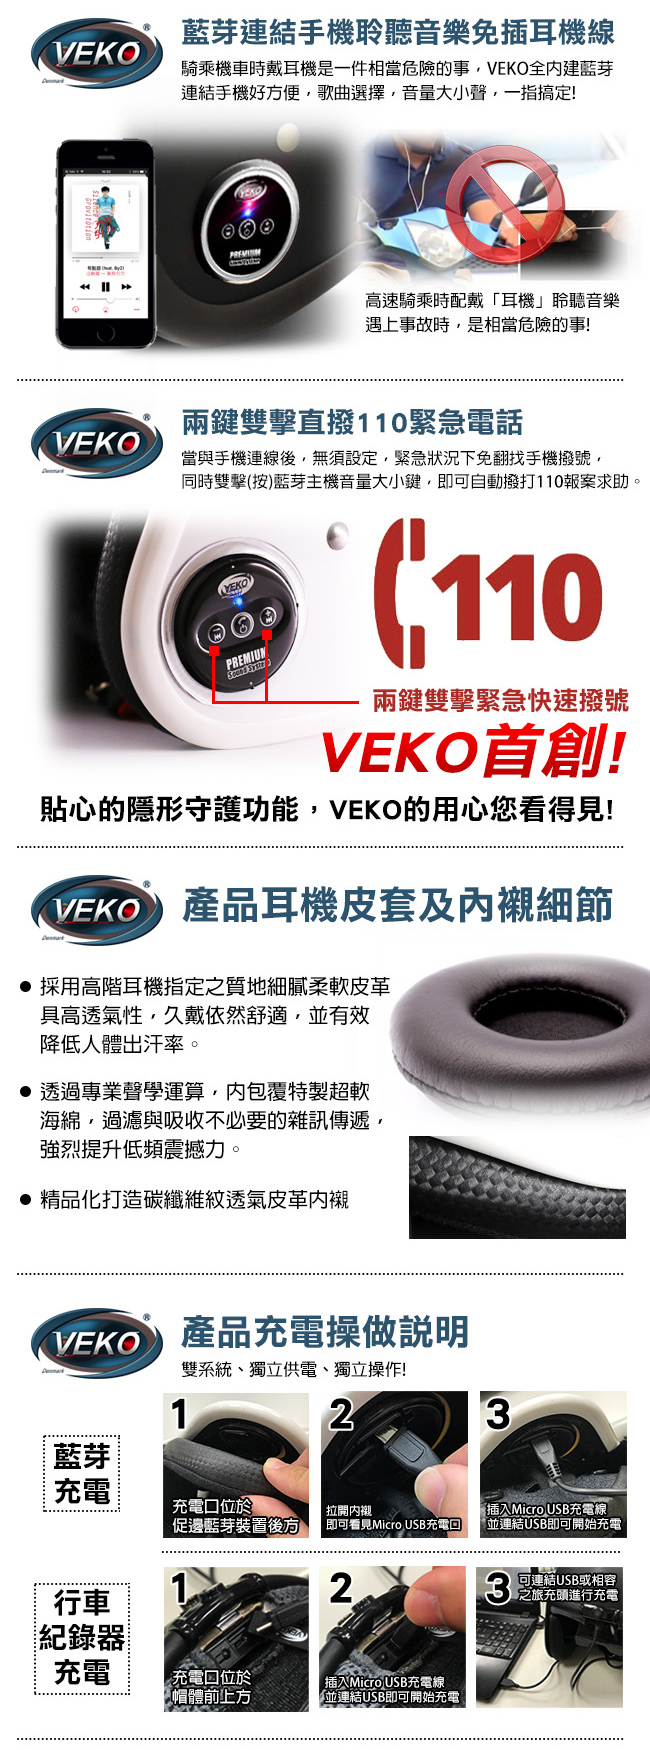 VEKO二代隱裝式1080i行車紀錄器+內建雙聲道藍芽通訊安全帽(雅光深咖啡)